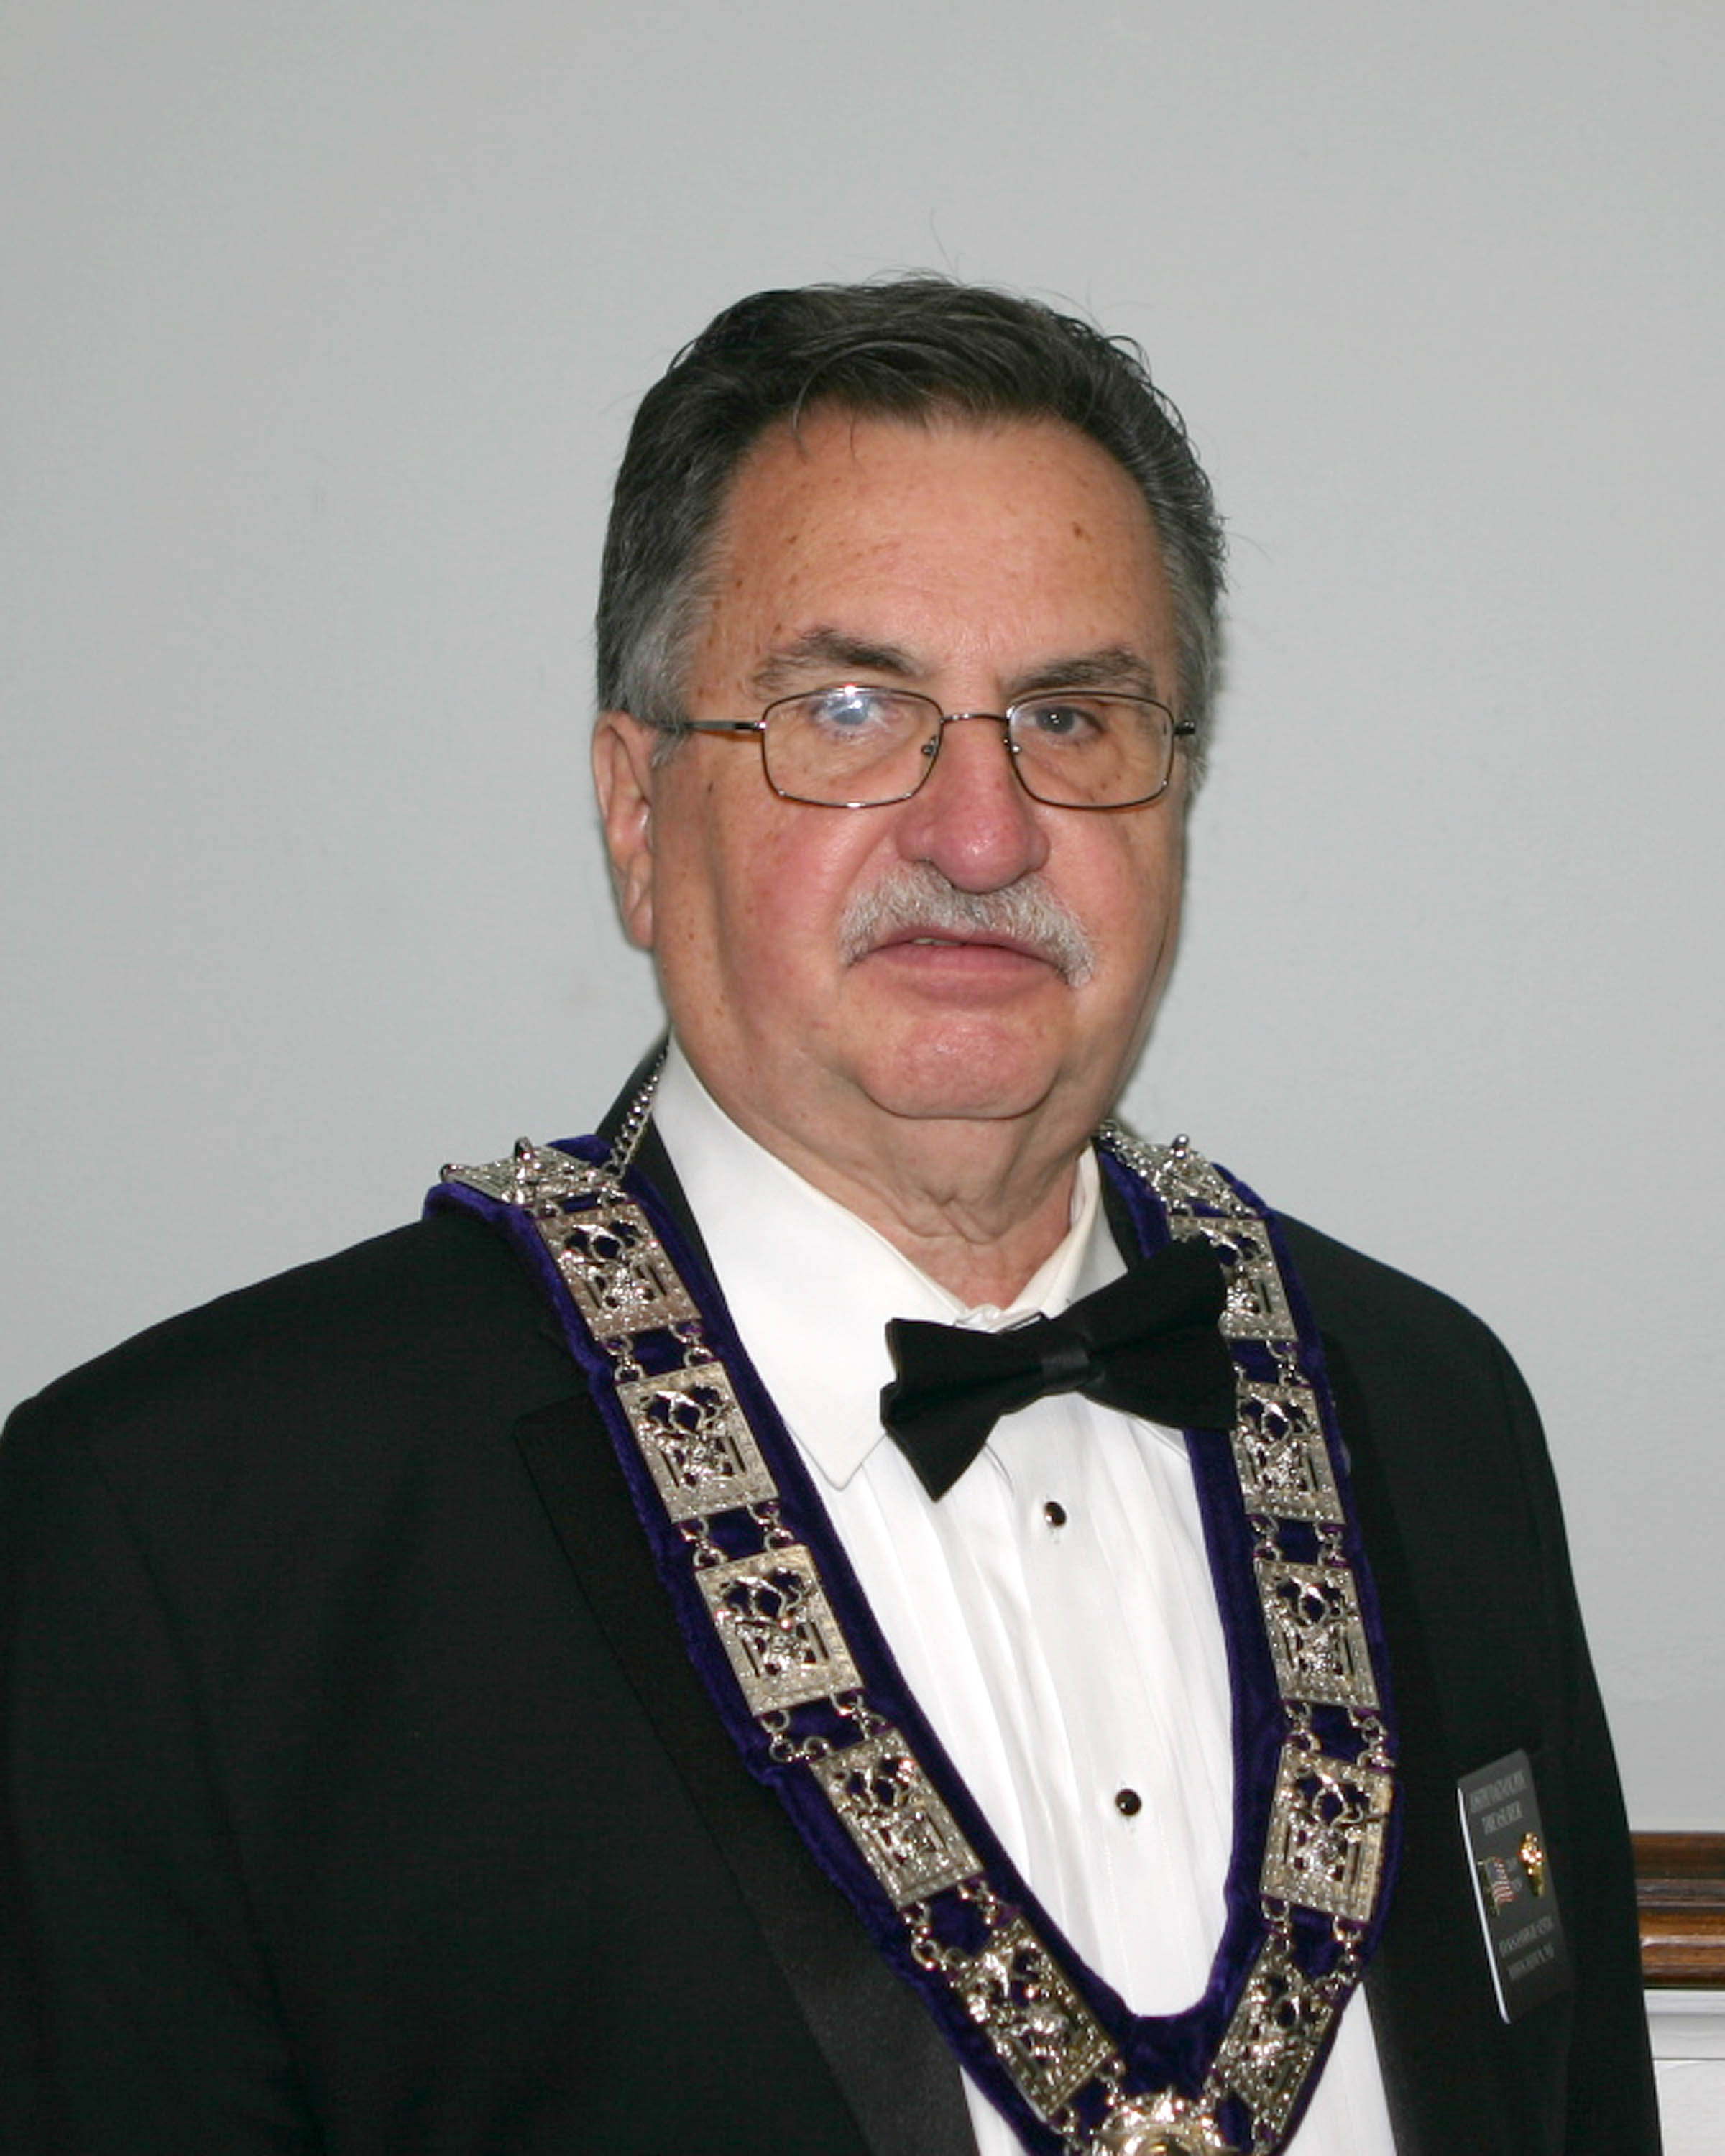 Joseph D. Magnani